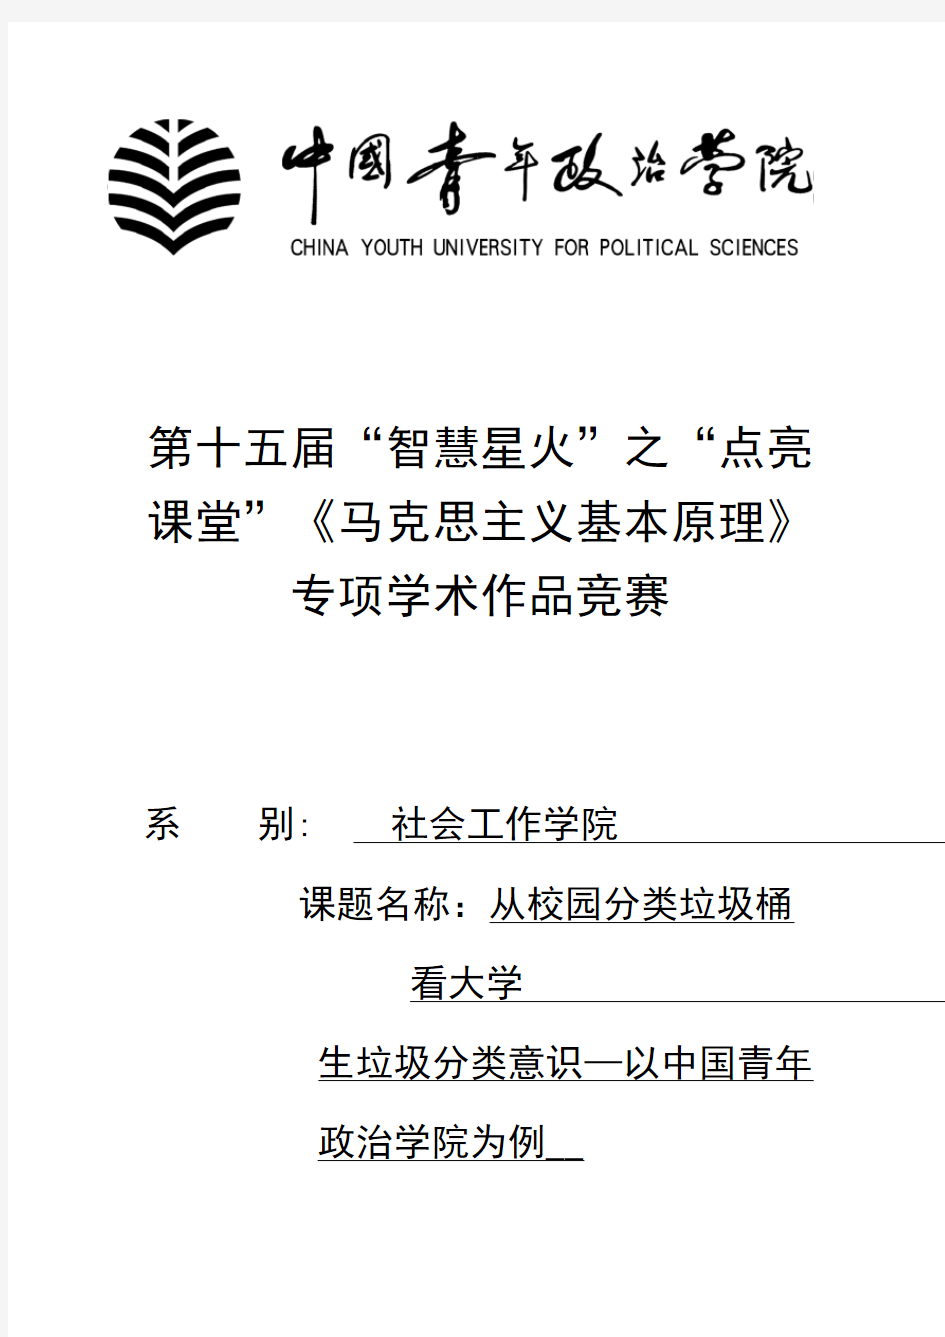 从校园分类垃圾桶看大学生垃圾分类意识-一中国青年政治学院为例